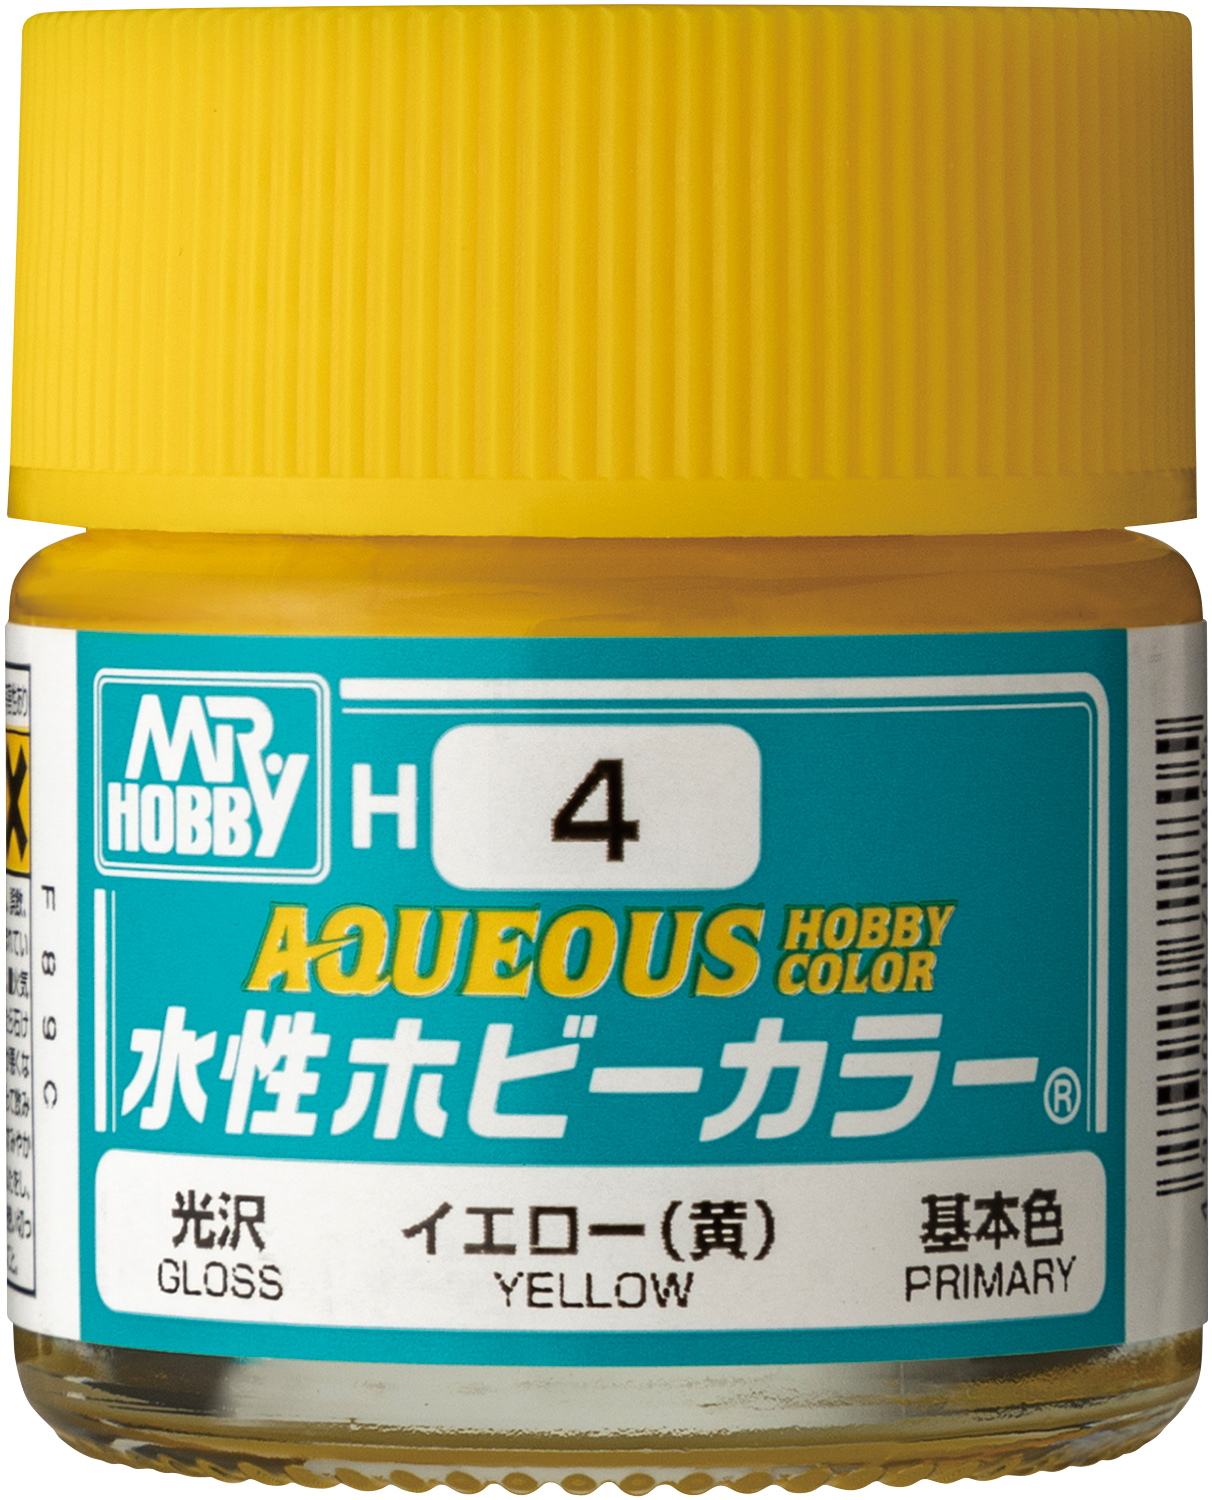 Aqueous Hobby Color starter Set - Mr Hobby HS30